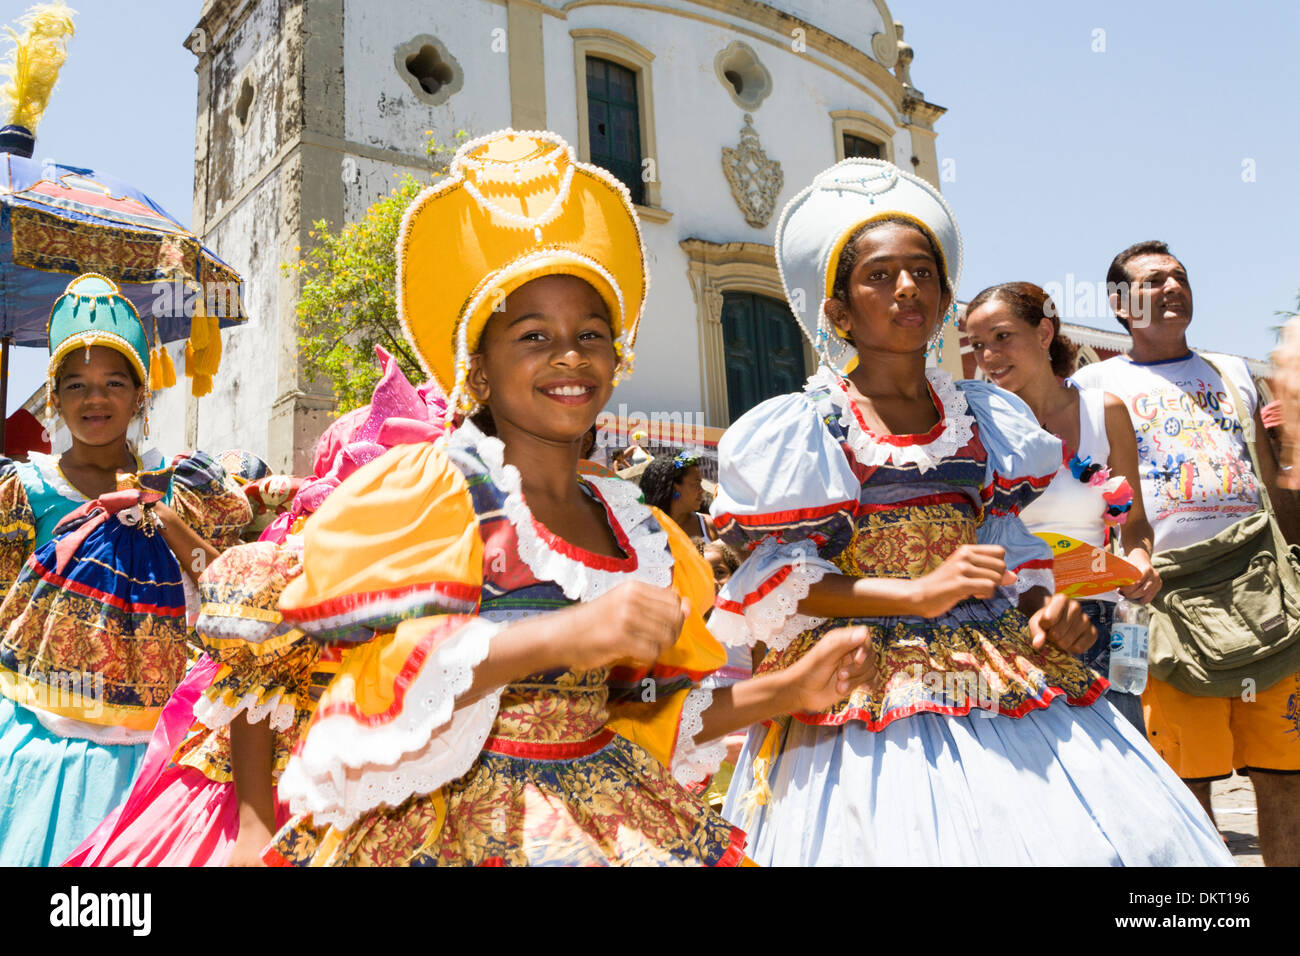 Street Carnival in Olinda near Recife, Brazil Stock Photo